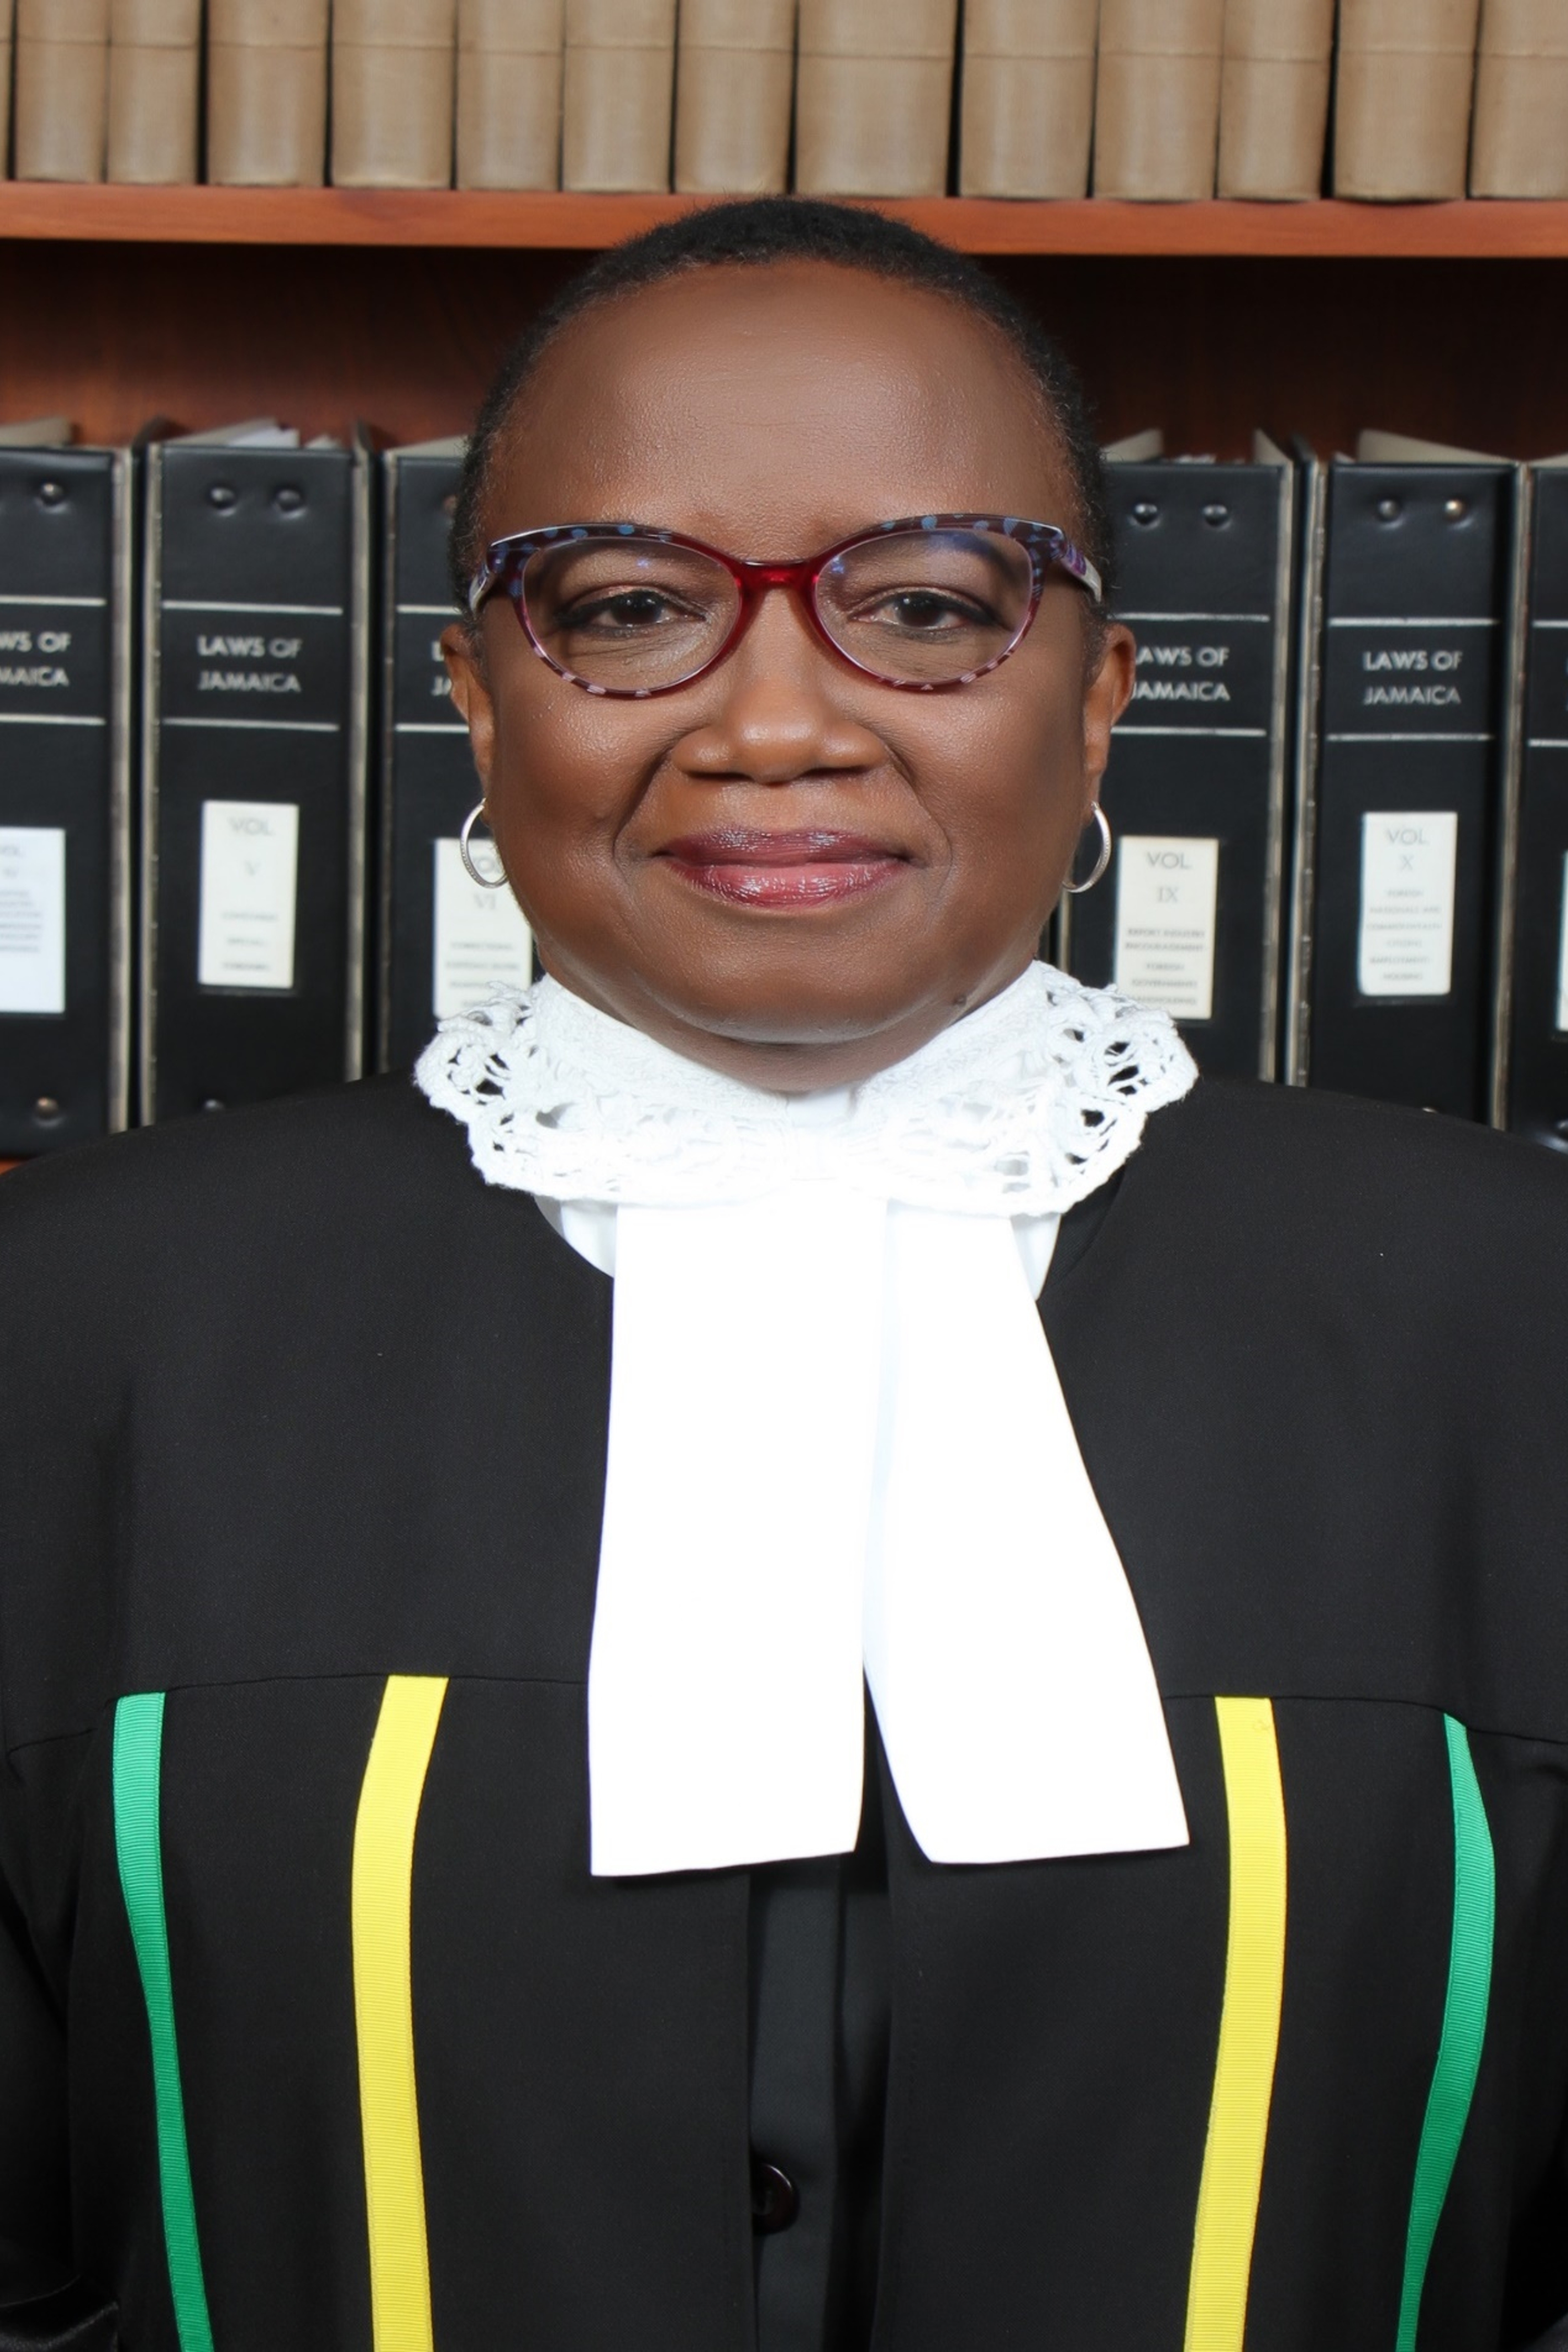 The Honourable Miss Justice Paulette Williams, JA